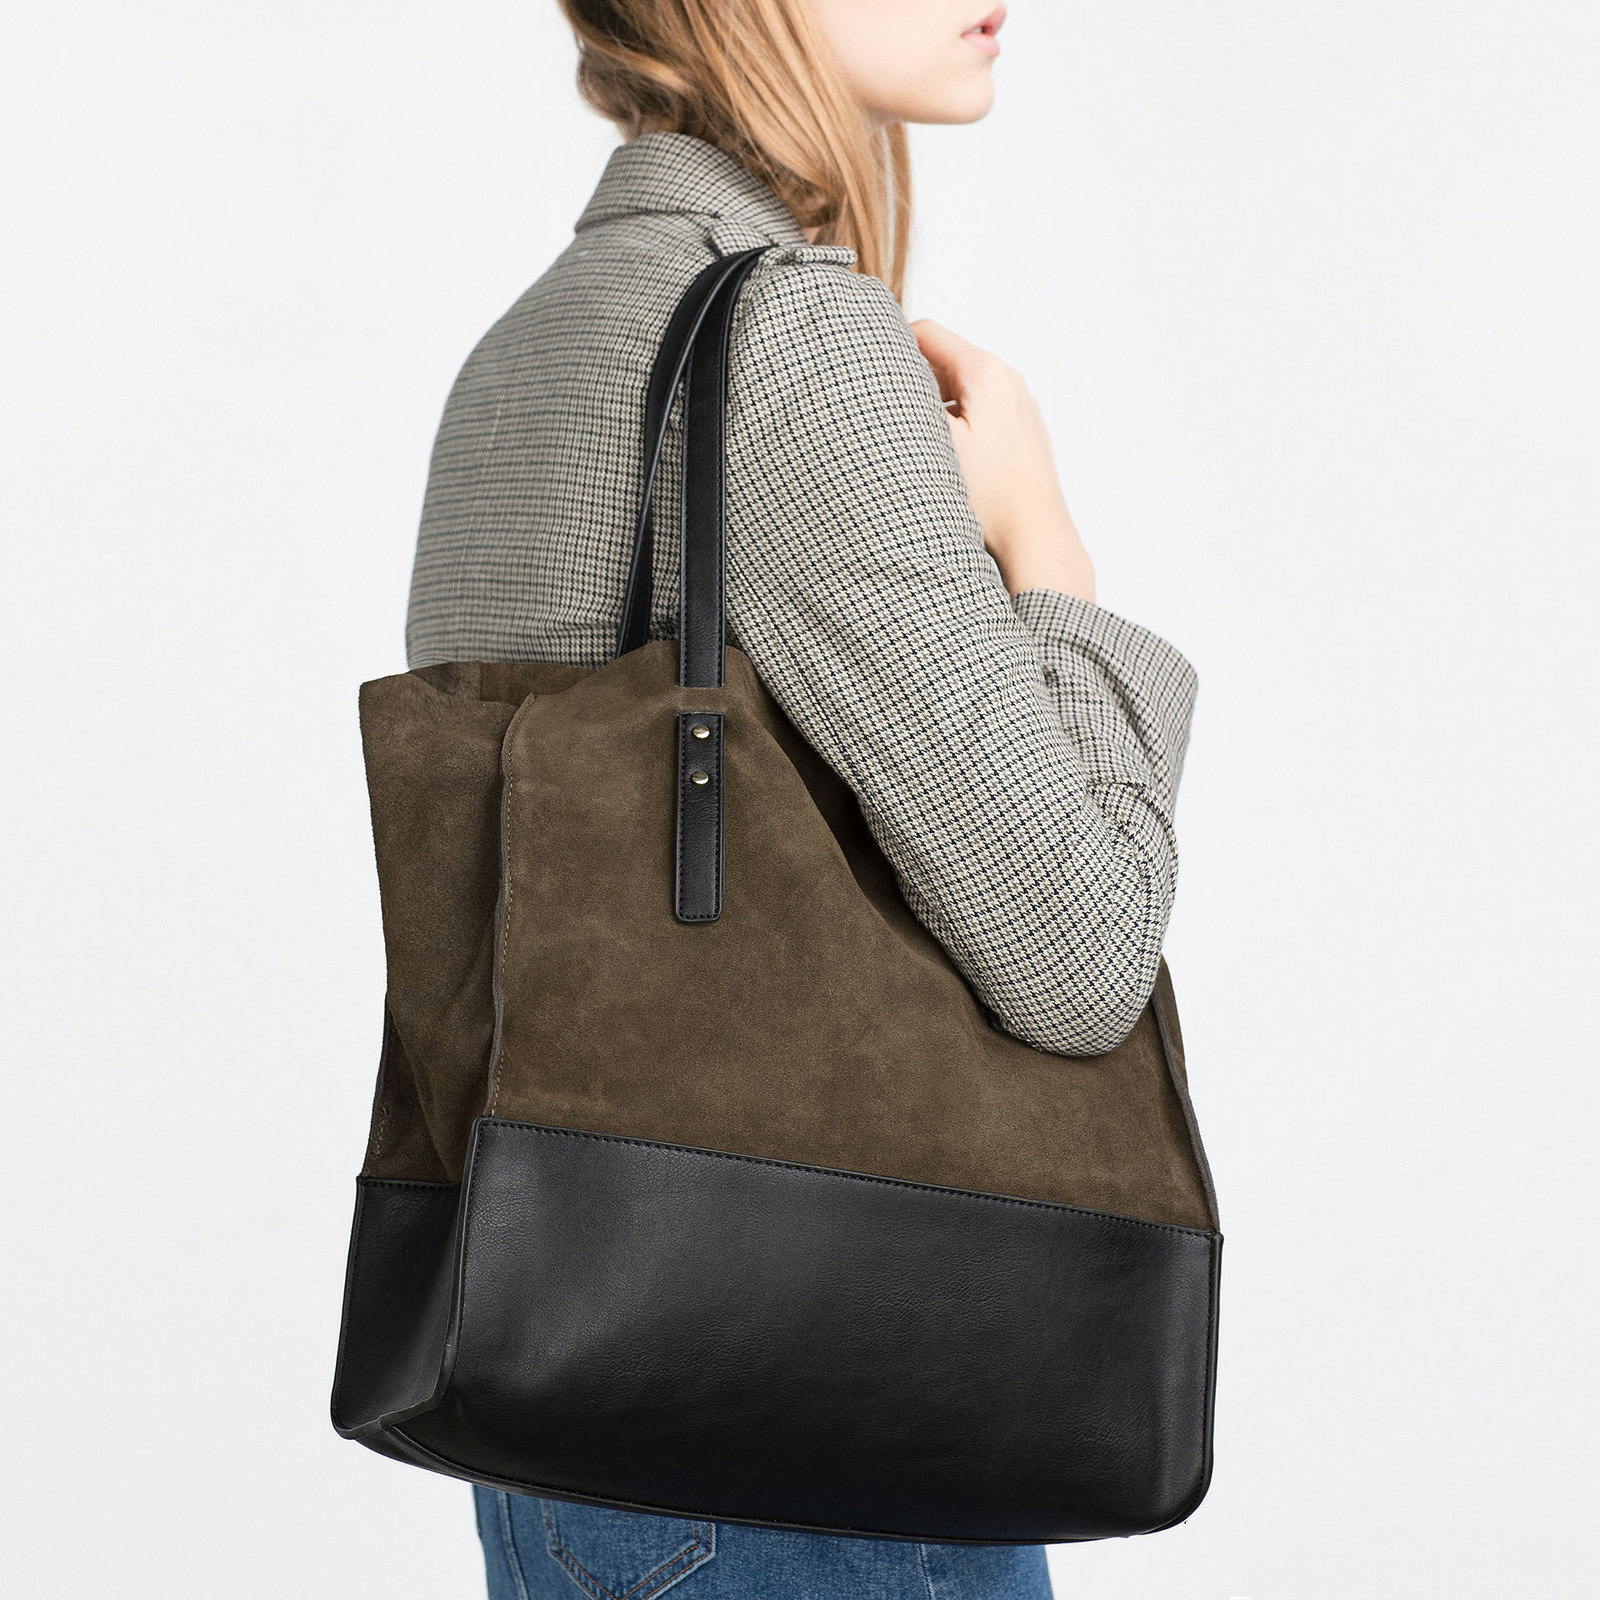 Zara kombinált bőr bevásárló táska 2015 fotója